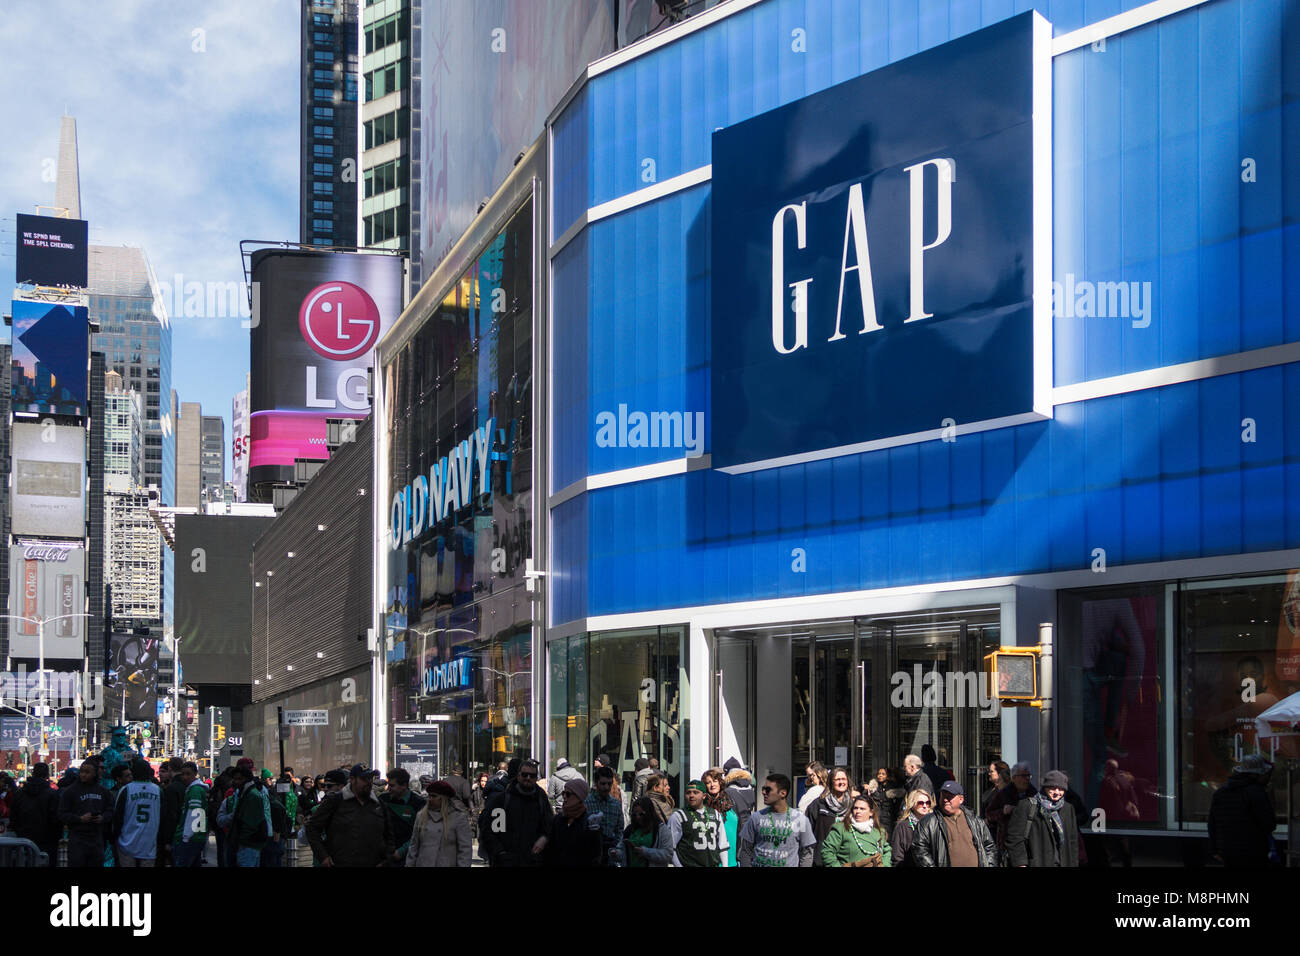 L'écart des écrans publicitaires à Times Square, New York, USA Banque D'Images